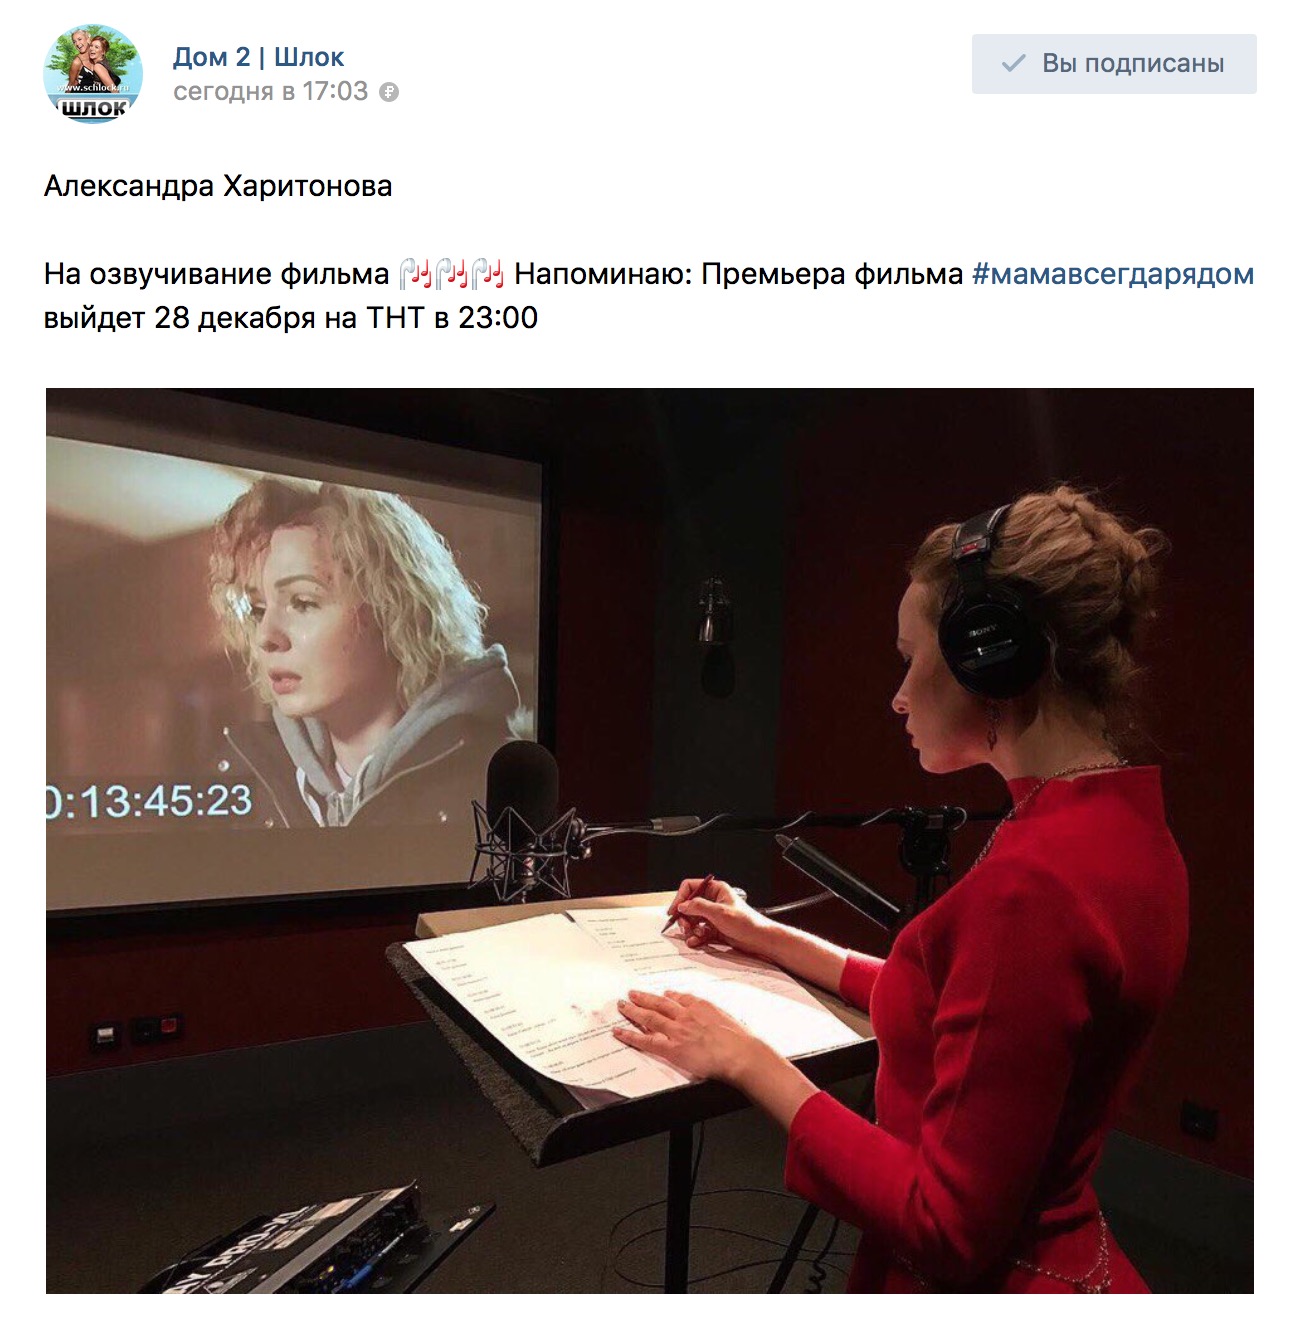 Александра Харитонова на озвучивание фильма